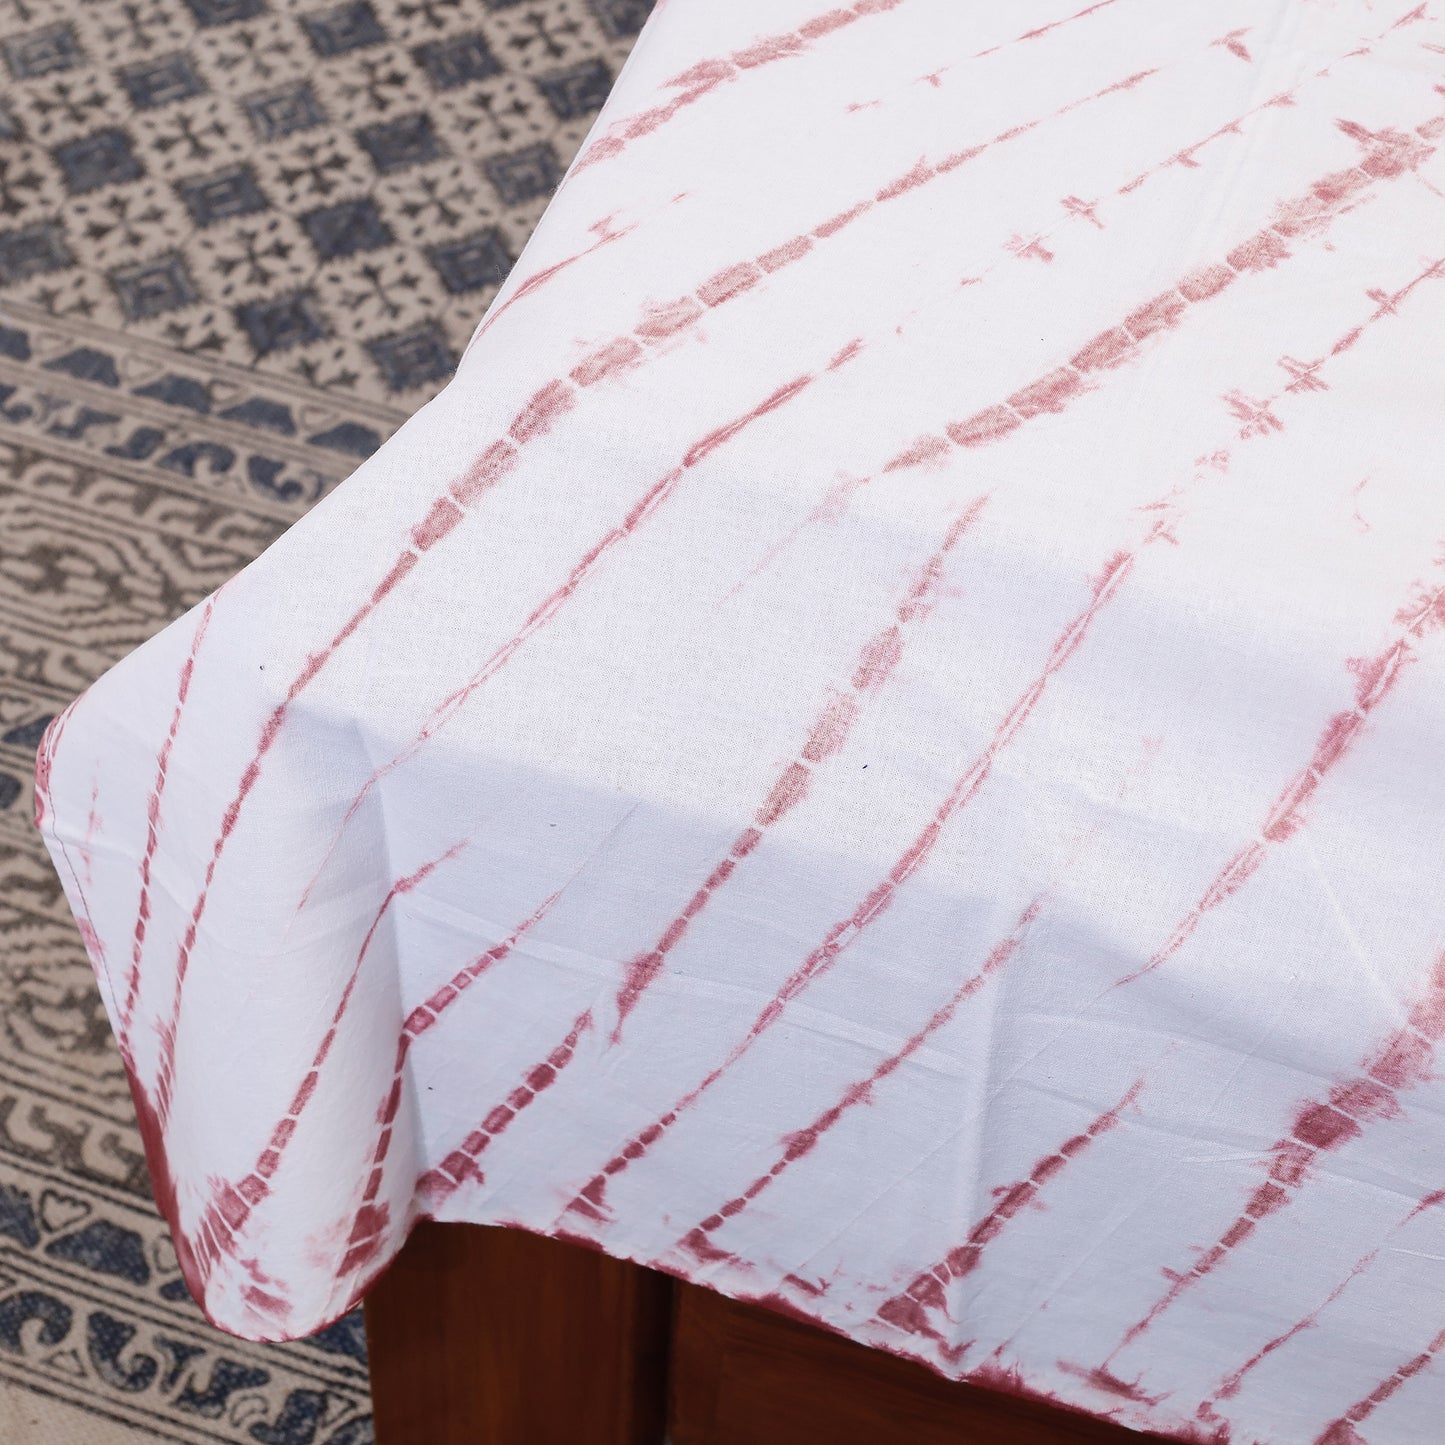 White - Shibori Tie-Dye Cotton Single Bed Cover (87 x 58 in)